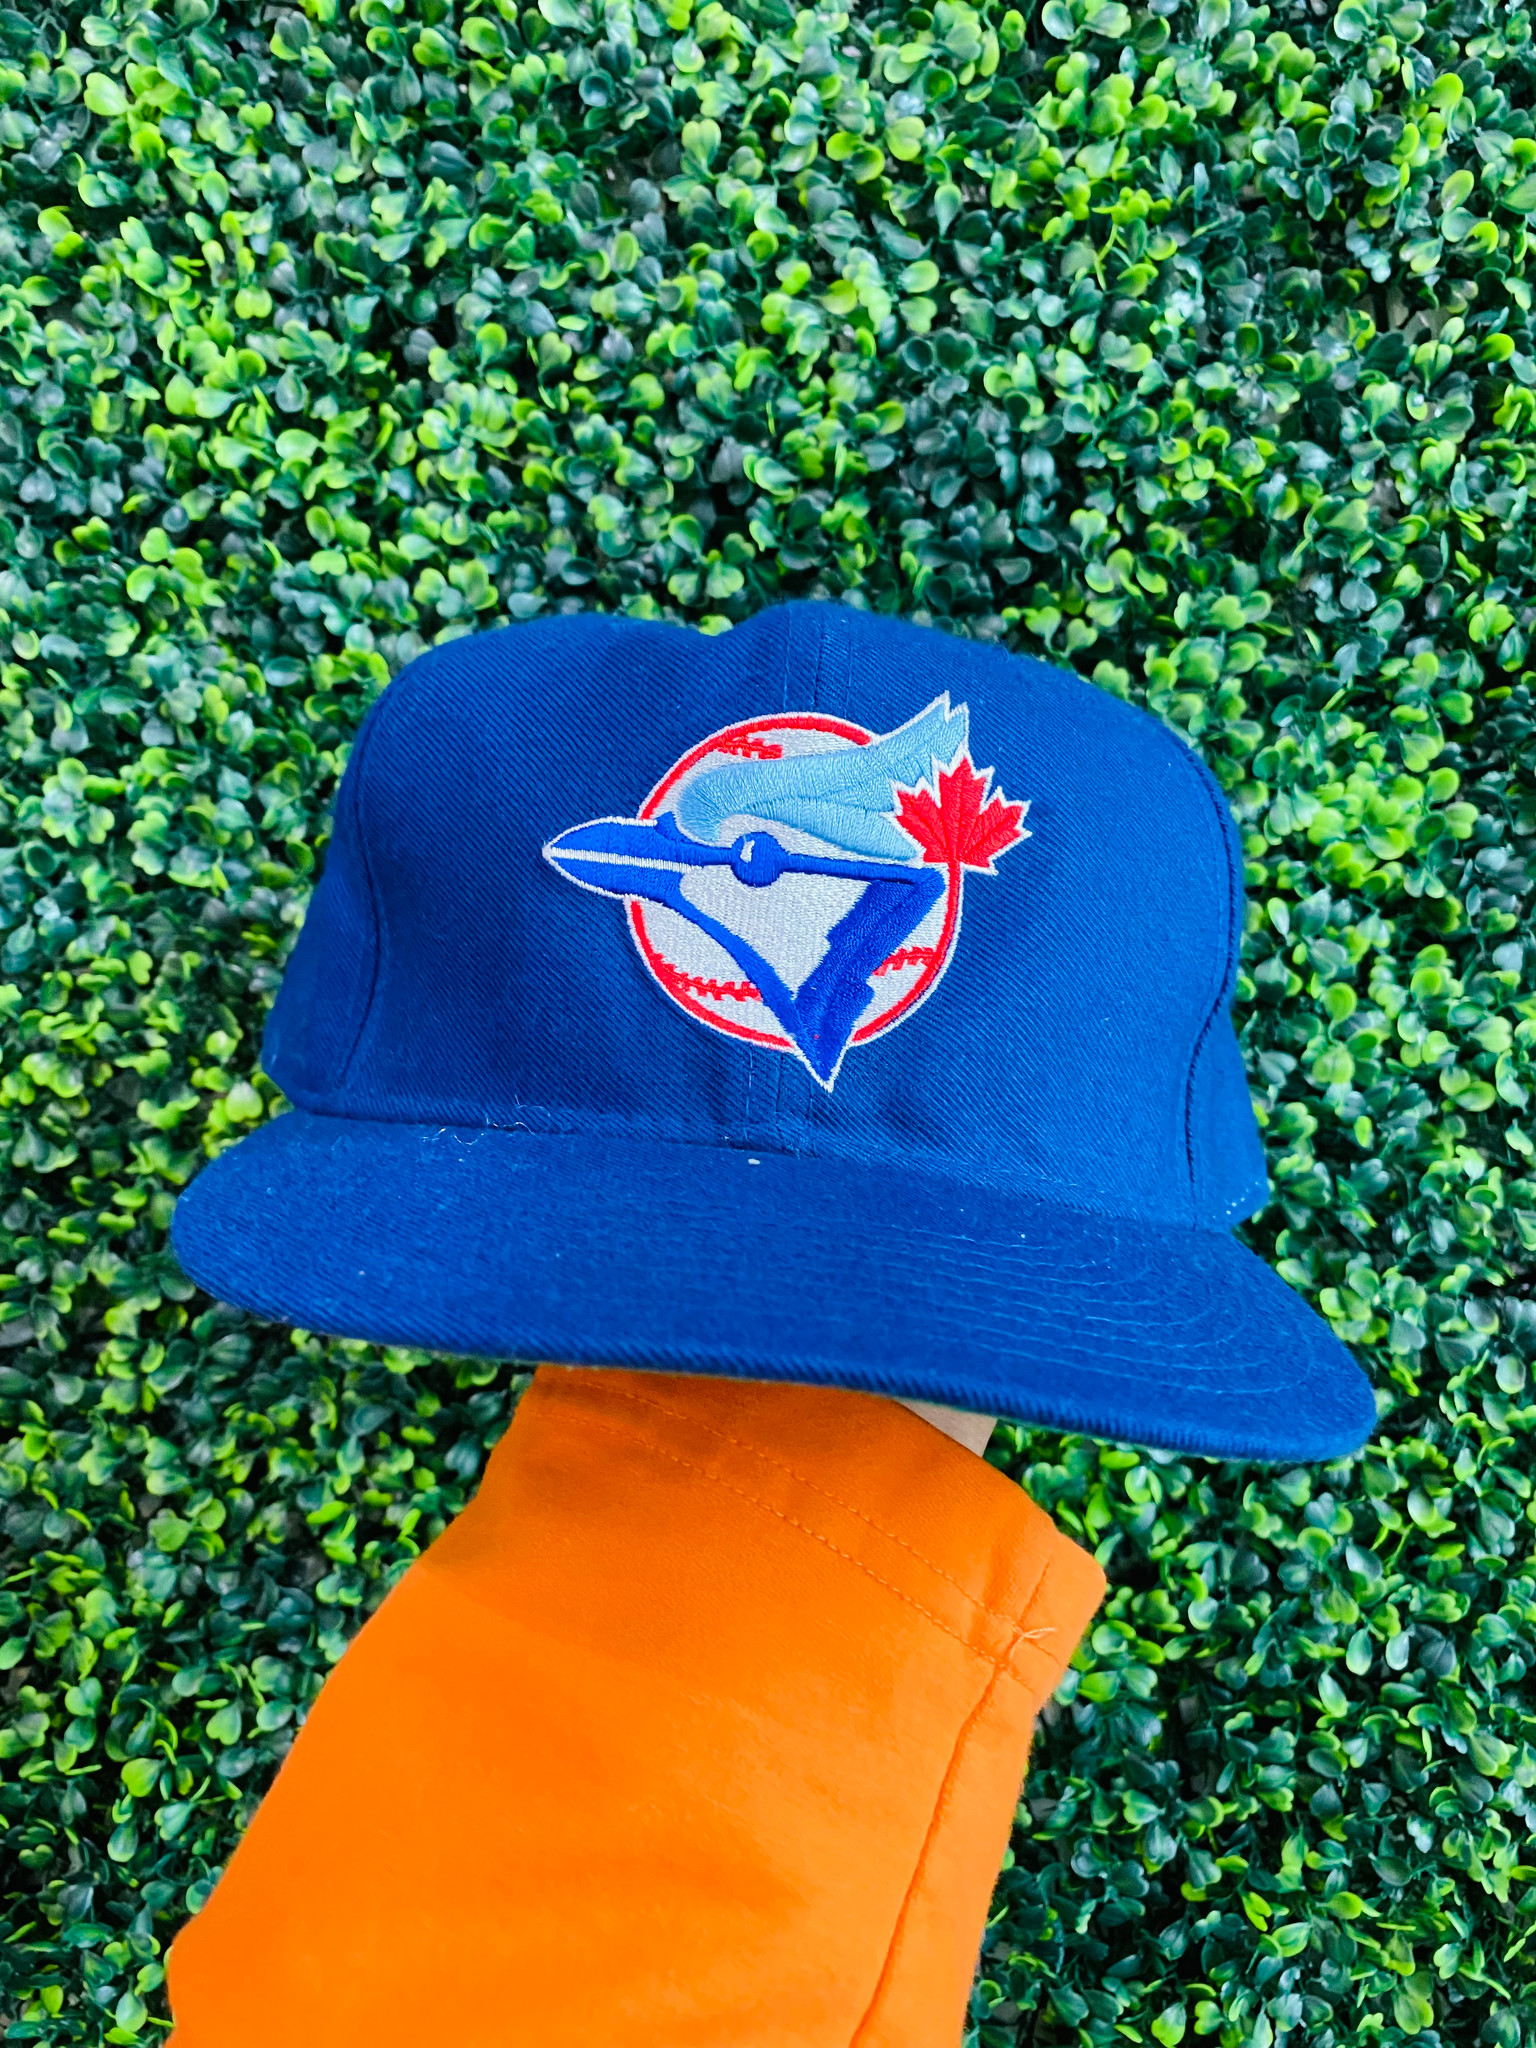 Toronto Blue Jays caps on display at Jays Shop Stadium Edi…